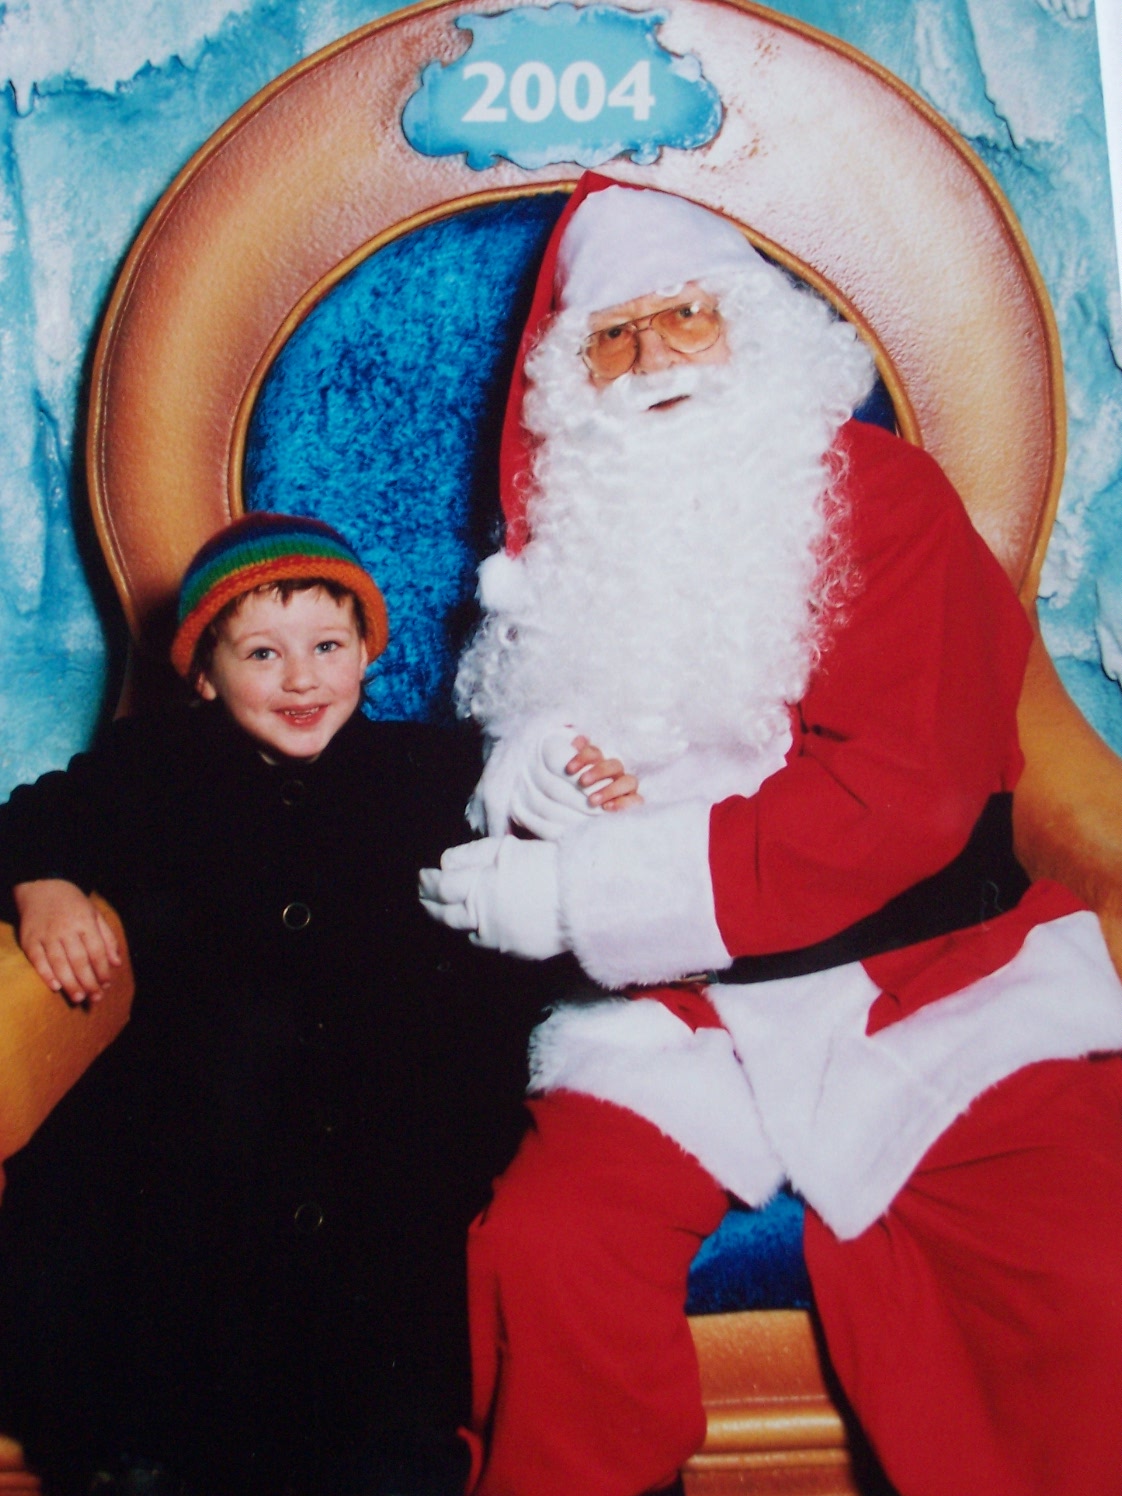 William with Santa